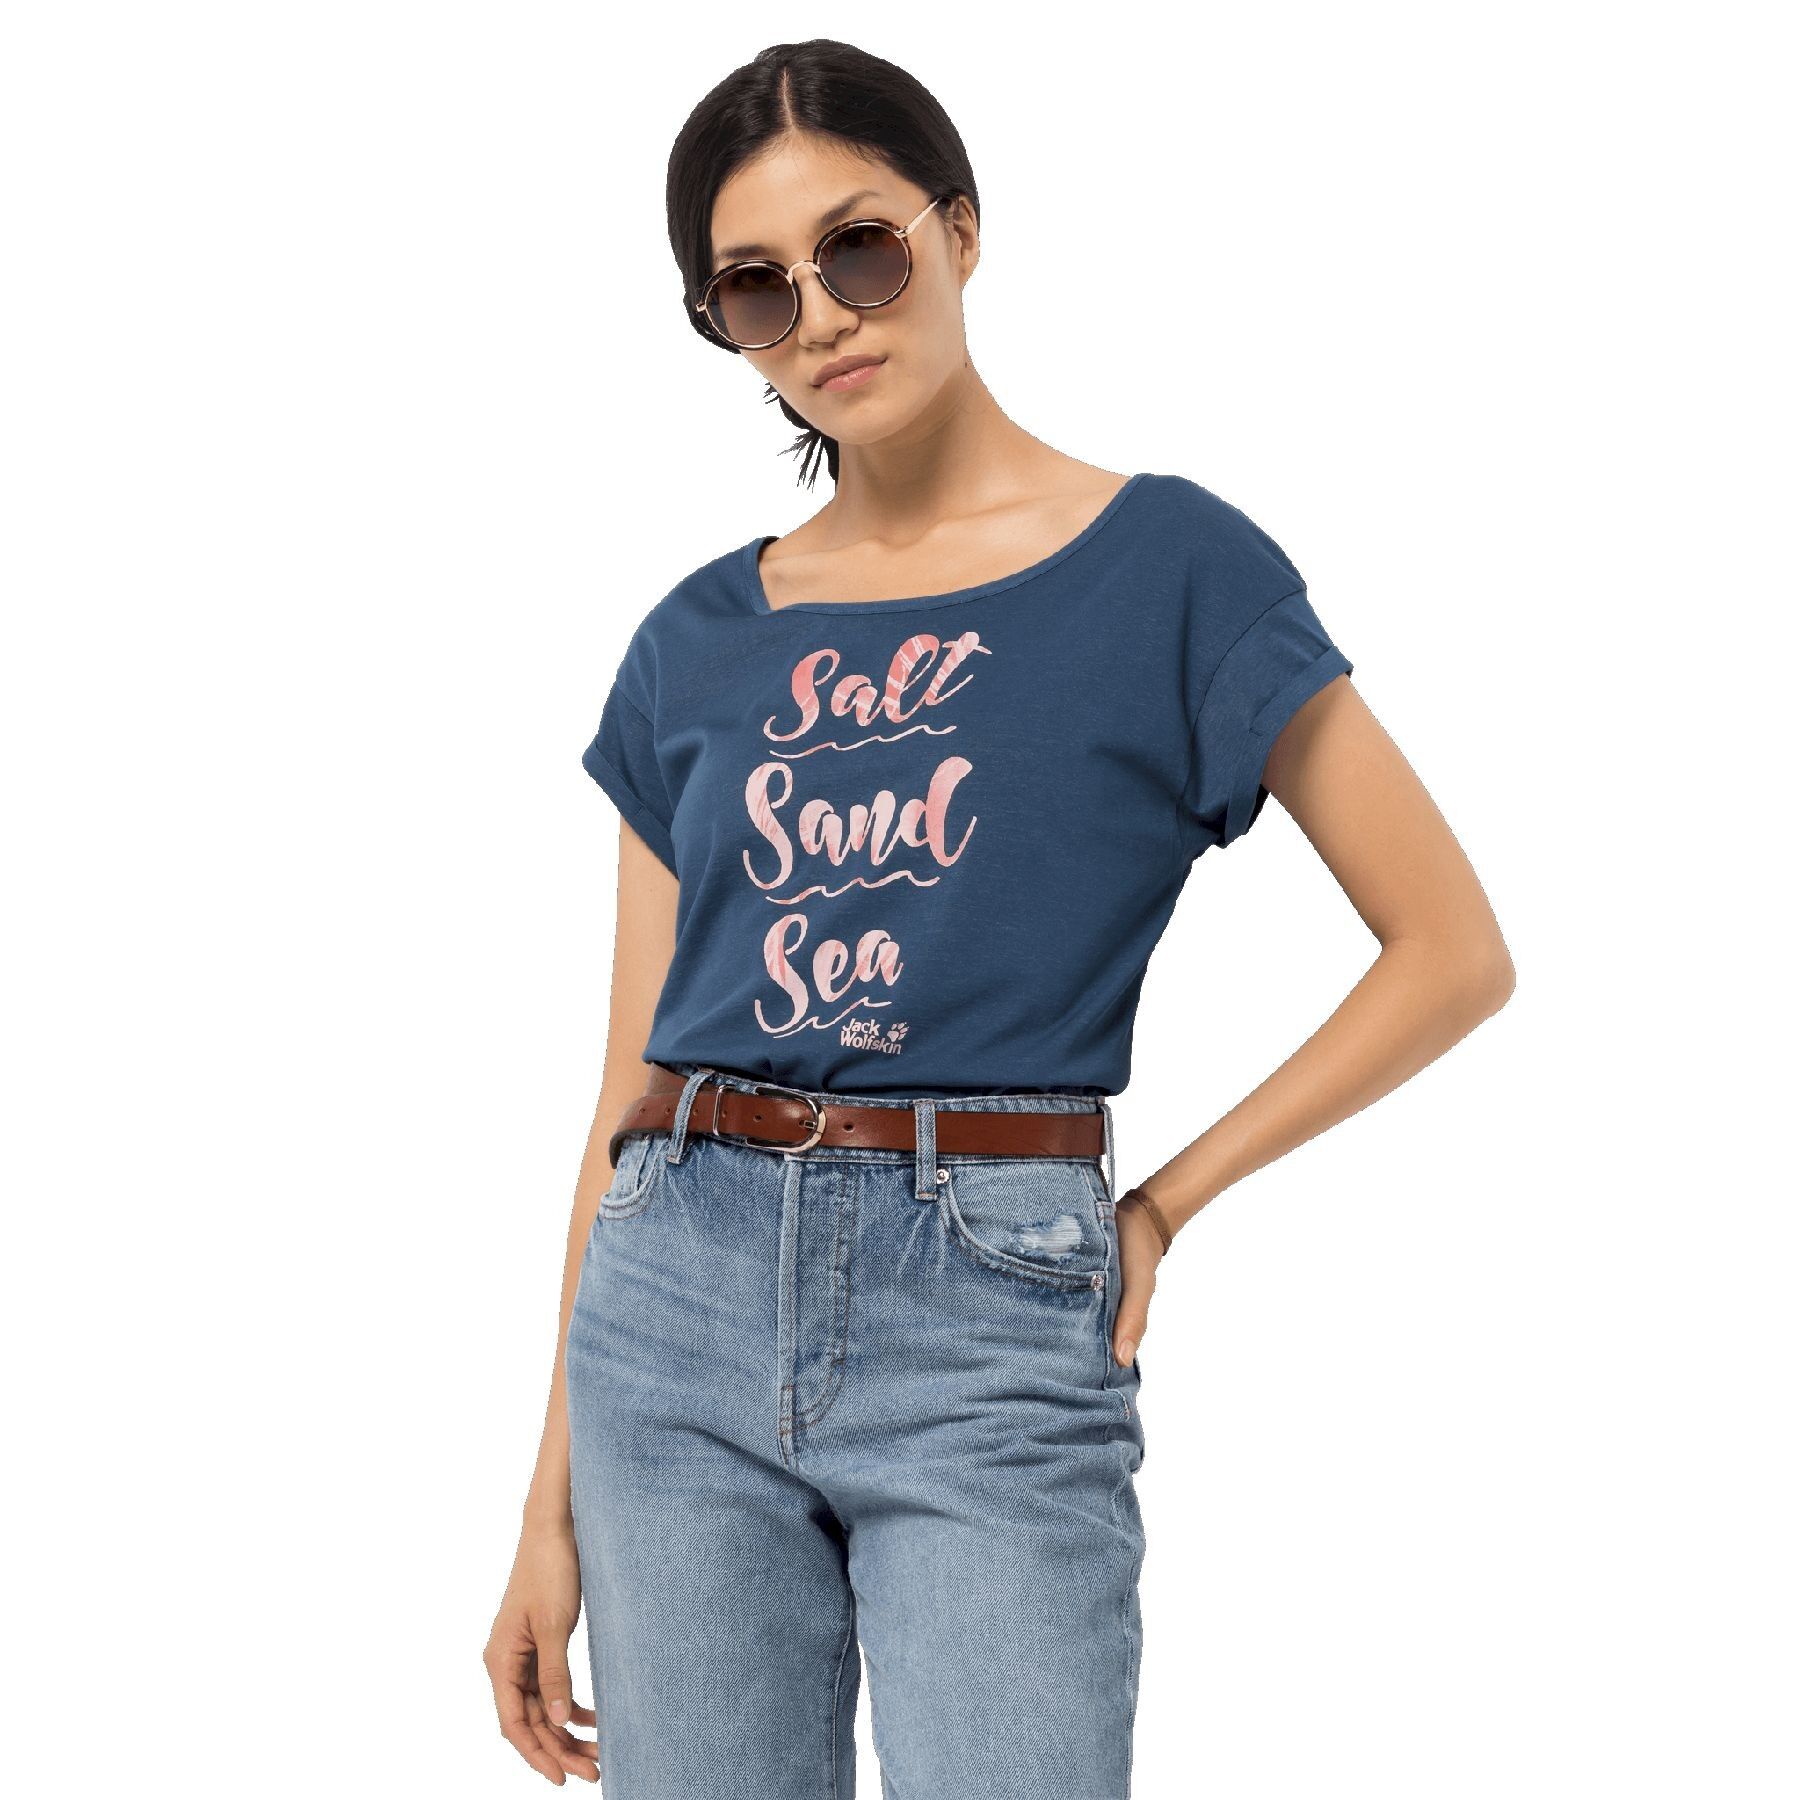 Jack Wolfskin Salt Sand Sea T - T-shirt - Dames